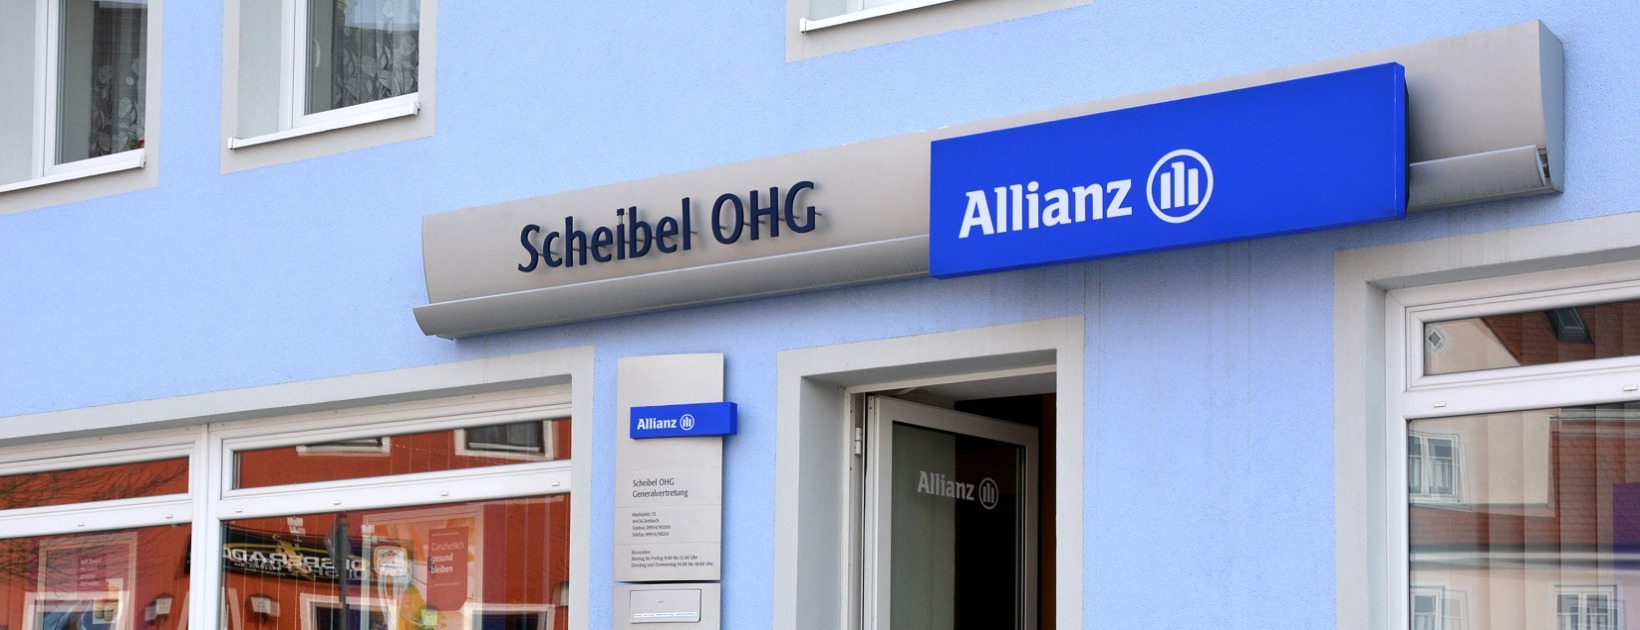 Allianz Versicherung Versicherungsbüro Scheibel OHG Simbach - Titelbild